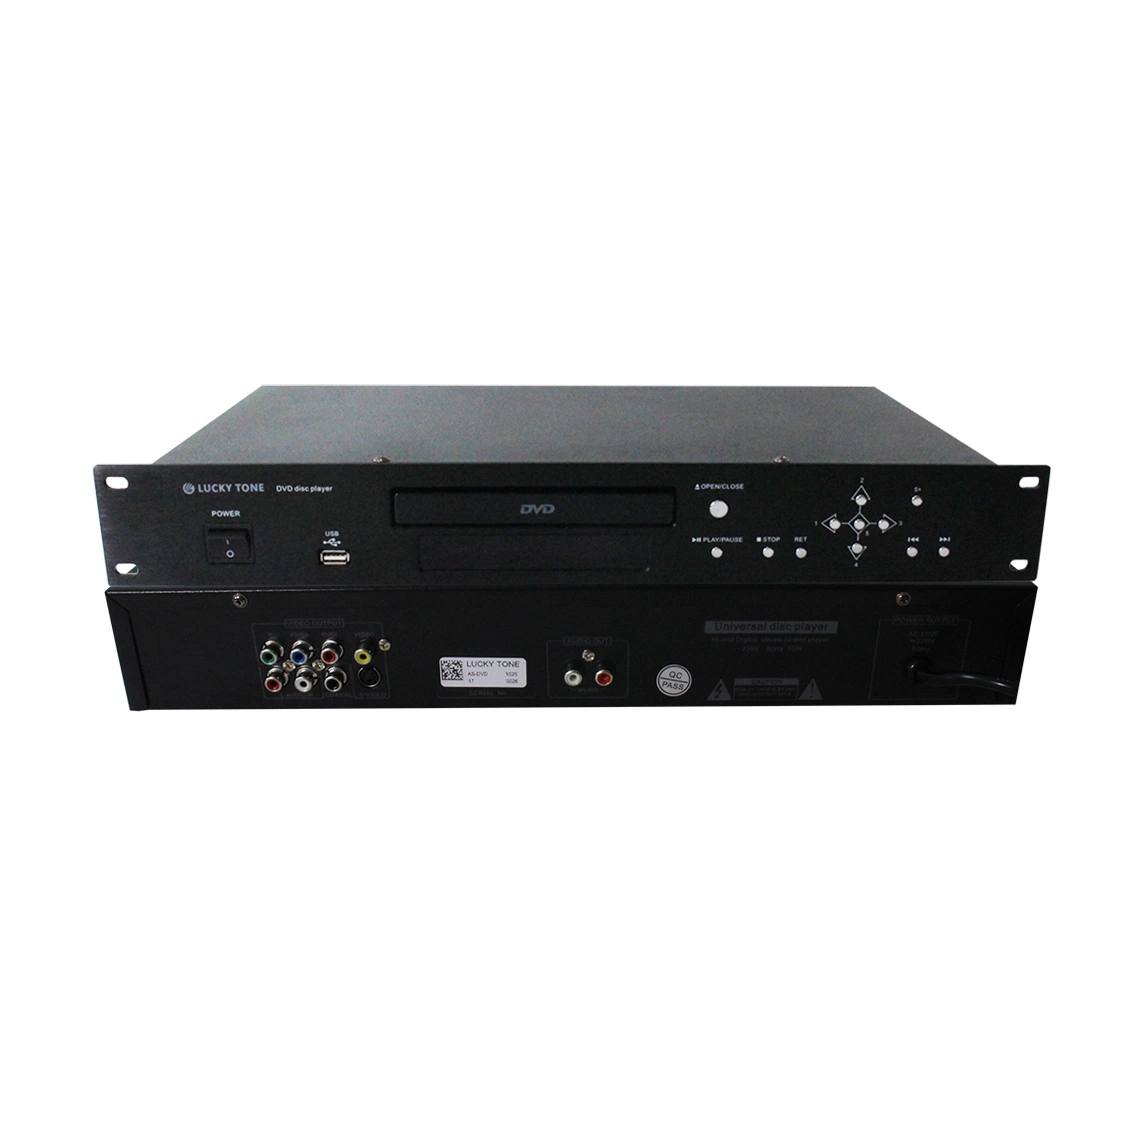 1.5 U Rack 19 بوصة 220 - 240 فولت تيار متردد 10 - 15 واط مع MP3 DVD مشغل مع وحدة تحكم عن بعد تعمل بالأشعة تحت الحمراء وUSB لاسلكية